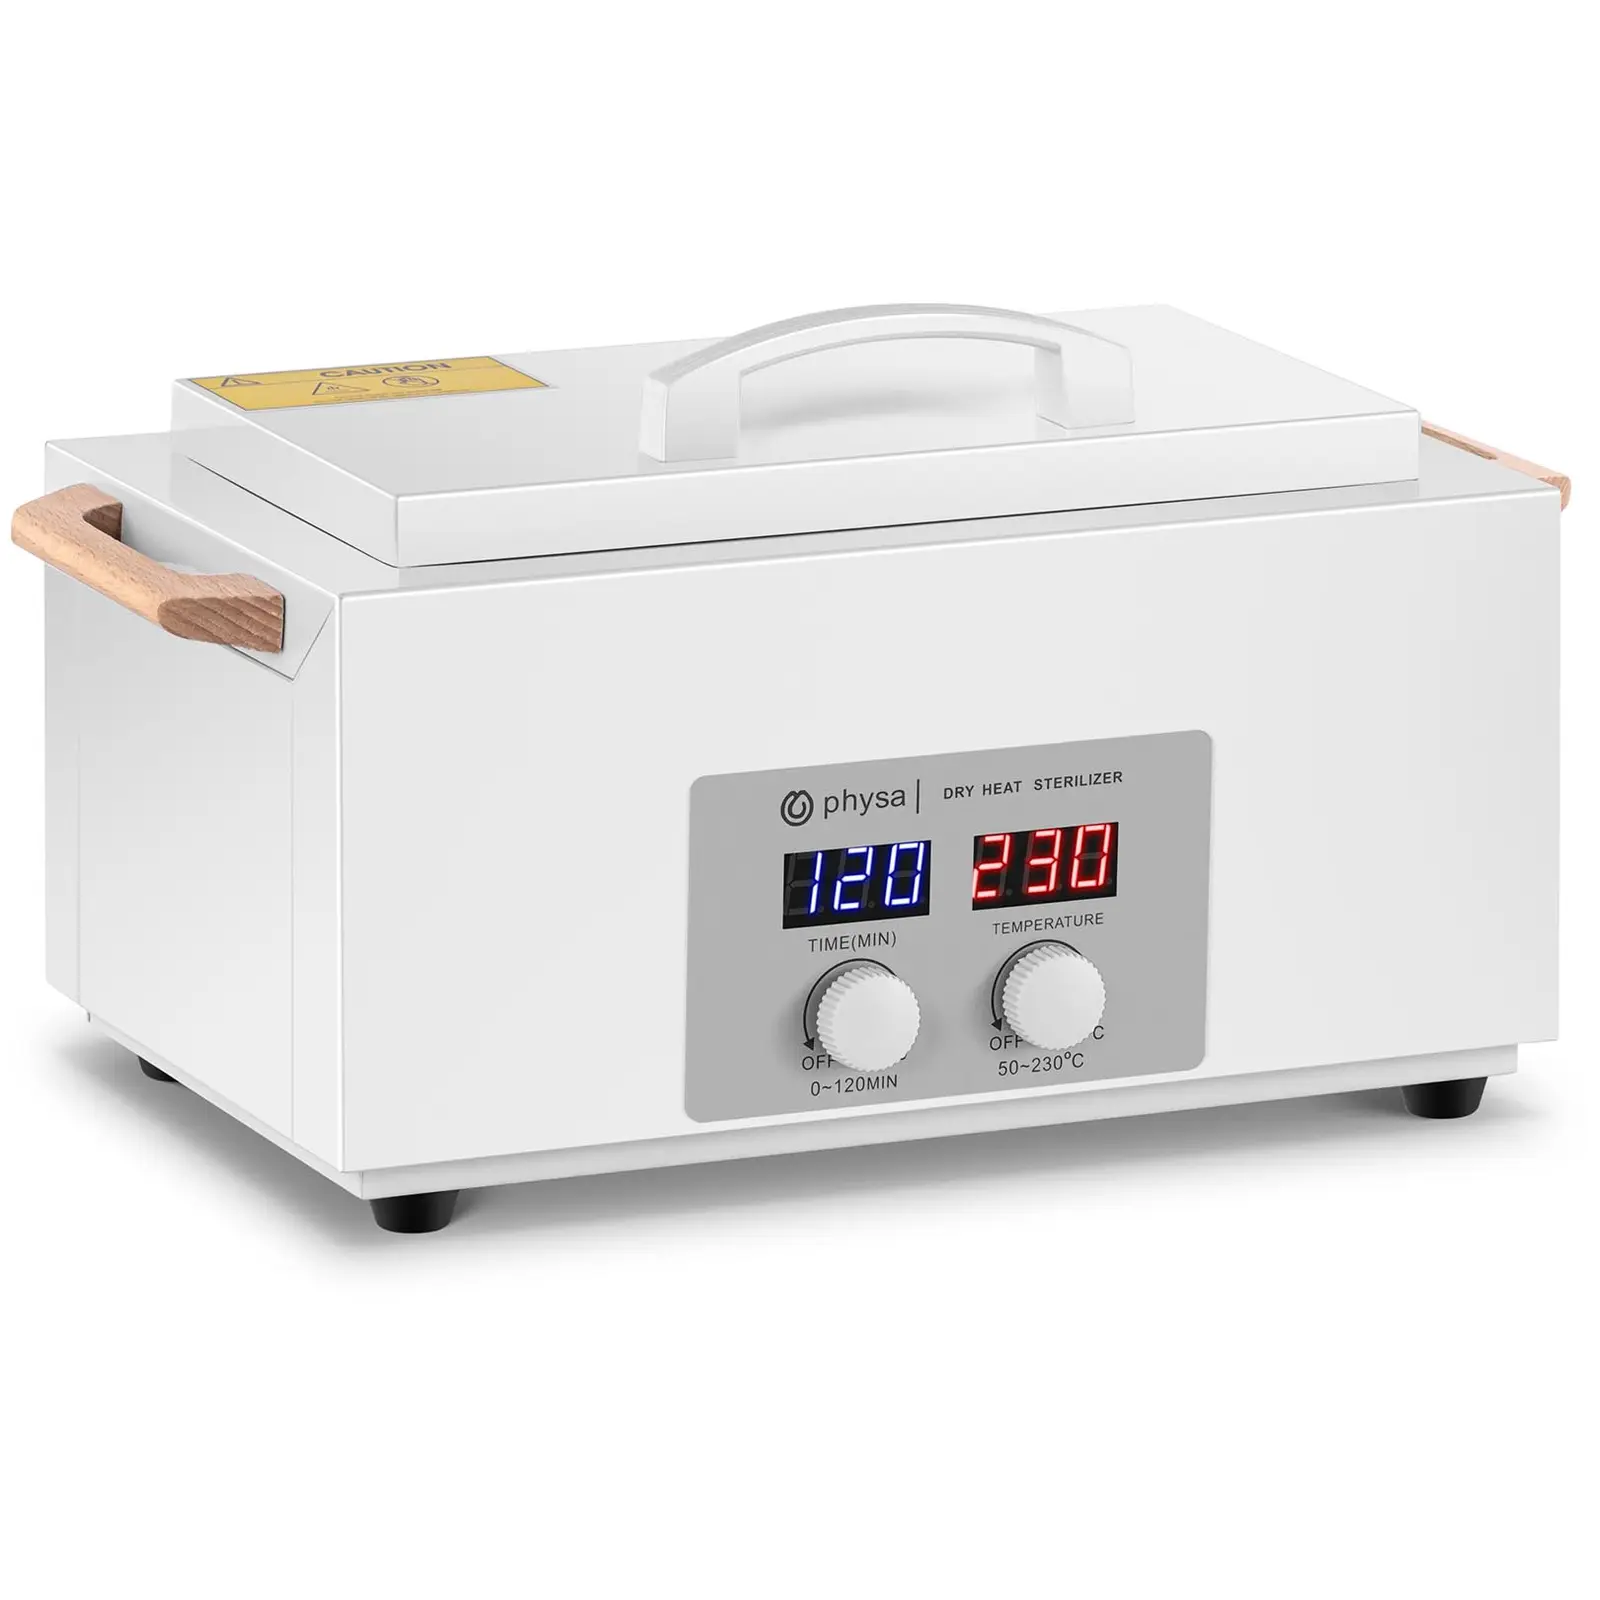 Esterilizador por aire caliente - 1,8 L - temporizador - de 50 a 230 °C